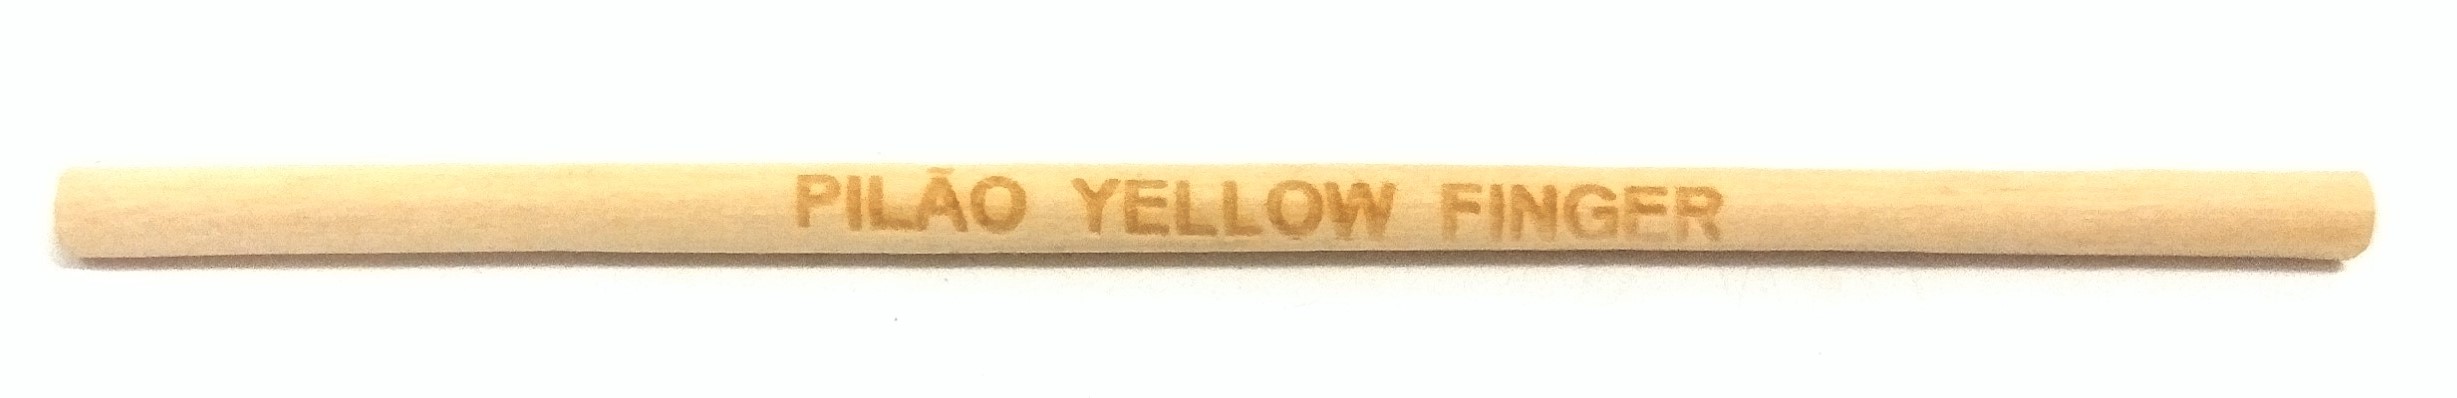 Pilão Yellow Finger